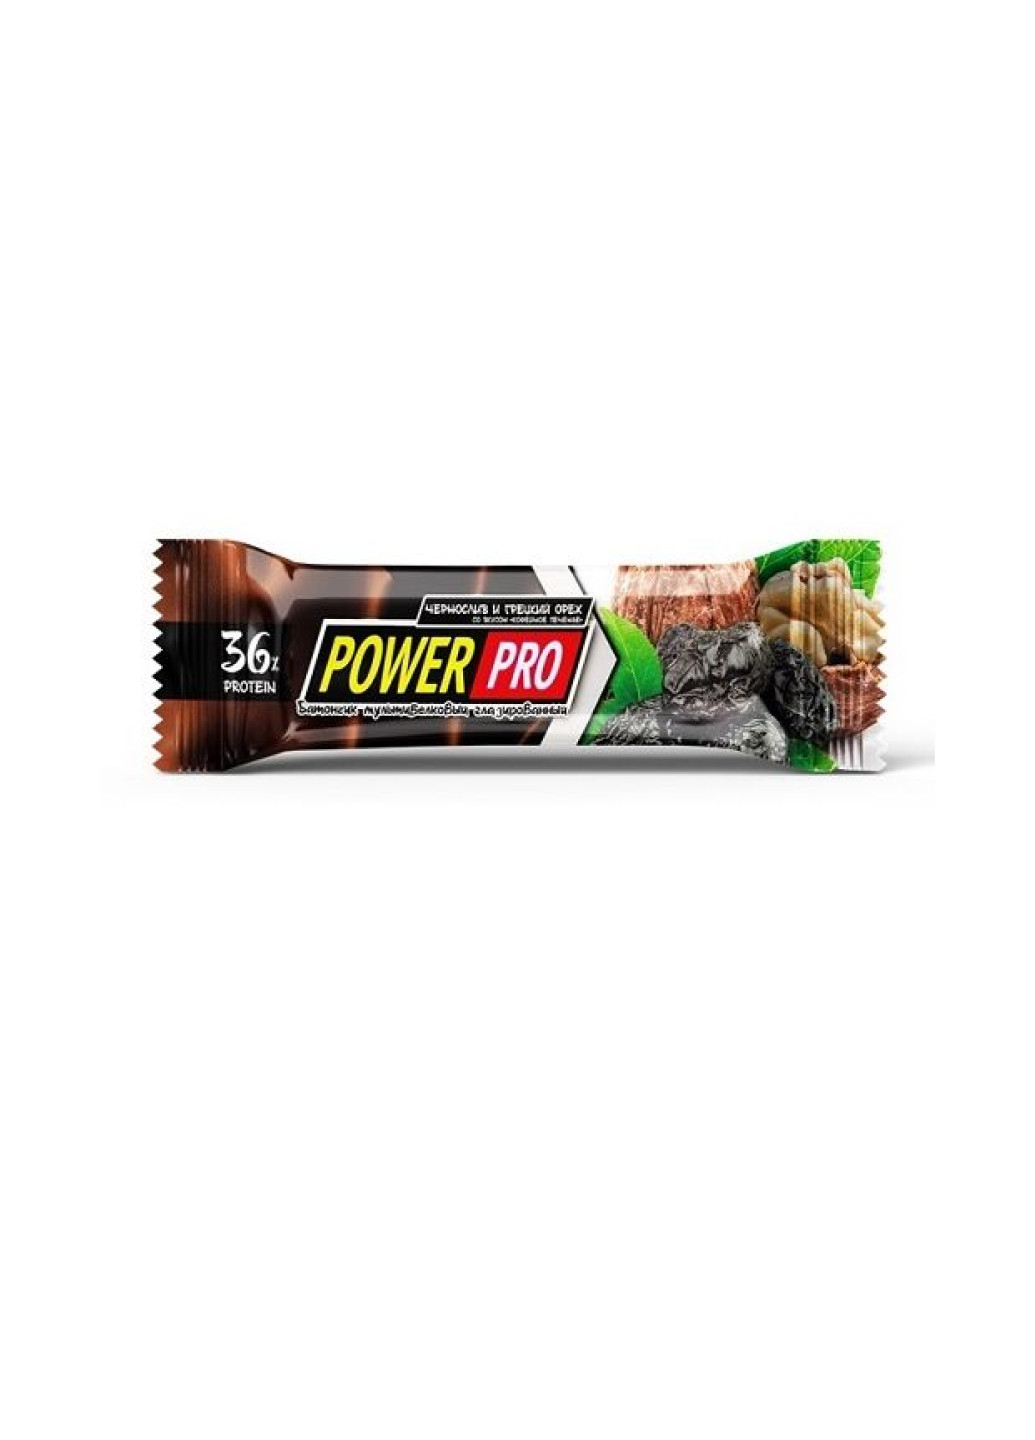 Диетическое питание для энергии Protein Bar Nutella 36% 20x60g Prunes and Nuts Power Pro (251857847)